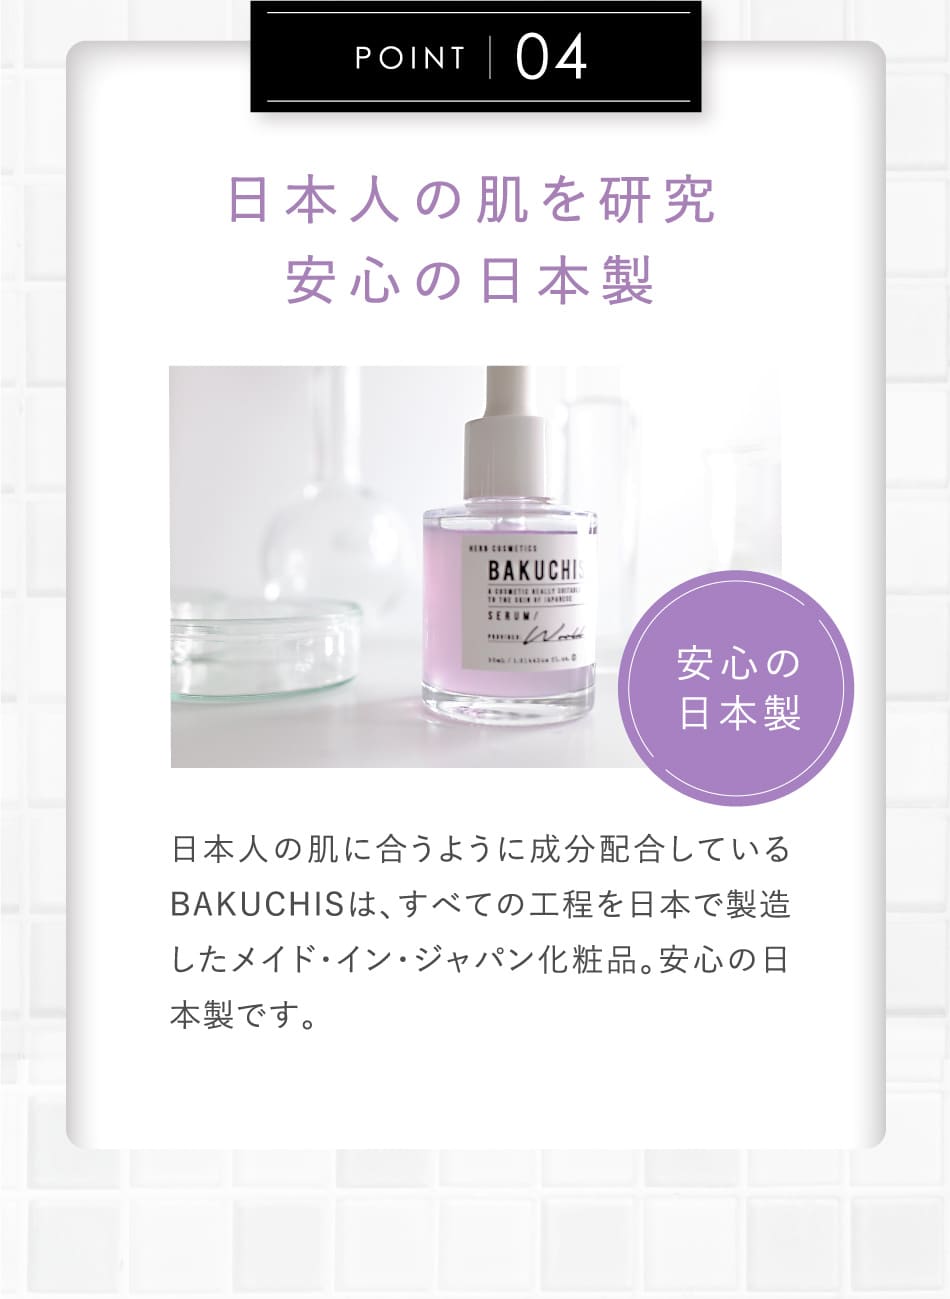 POINT04 日本人の肌を研究安心の日本製 日本人の肌に合うように成分配合しているBAKUCHISは、すべての工程を日本で製造したメイド・イン・ジャパン化粧品。安心の日本製です。